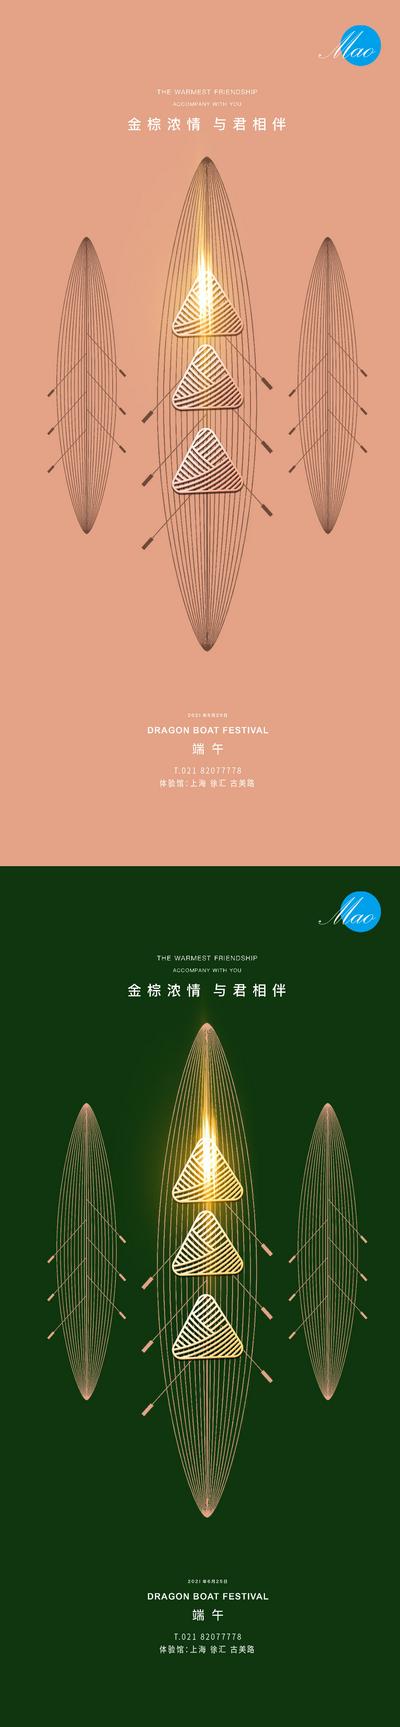 南门网 海报 房地产 中国传统节日 端午节 龙舟 粽子 粽叶  简约 创意